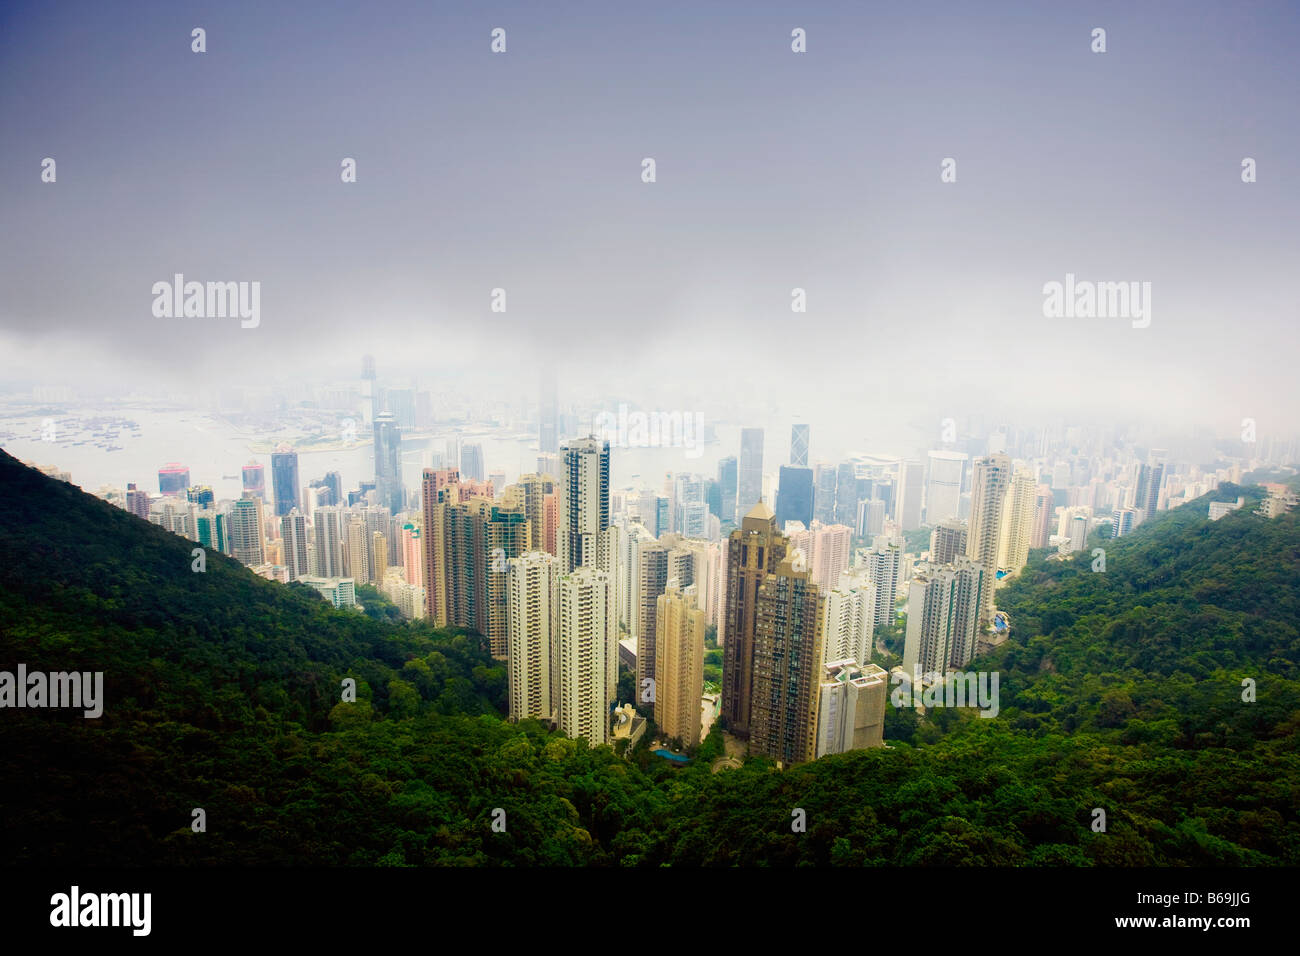 Vista aerea di grattacieli in una città, Isola di Hong Kong, Hong Kong, Cina Foto Stock